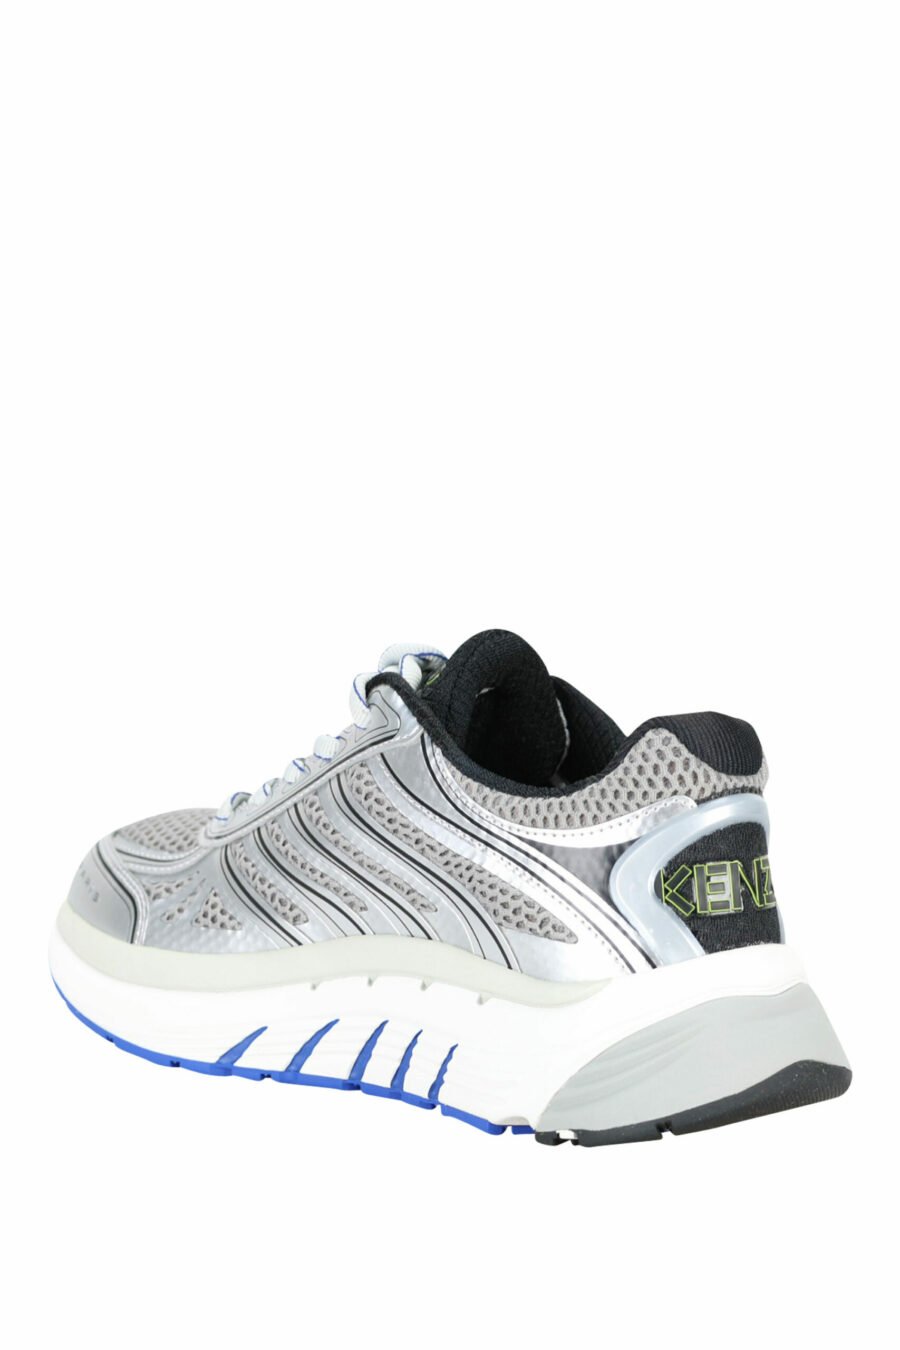 Zapatillas grises con azul "kenzo tech runner" - 3612230549418 3 scaled